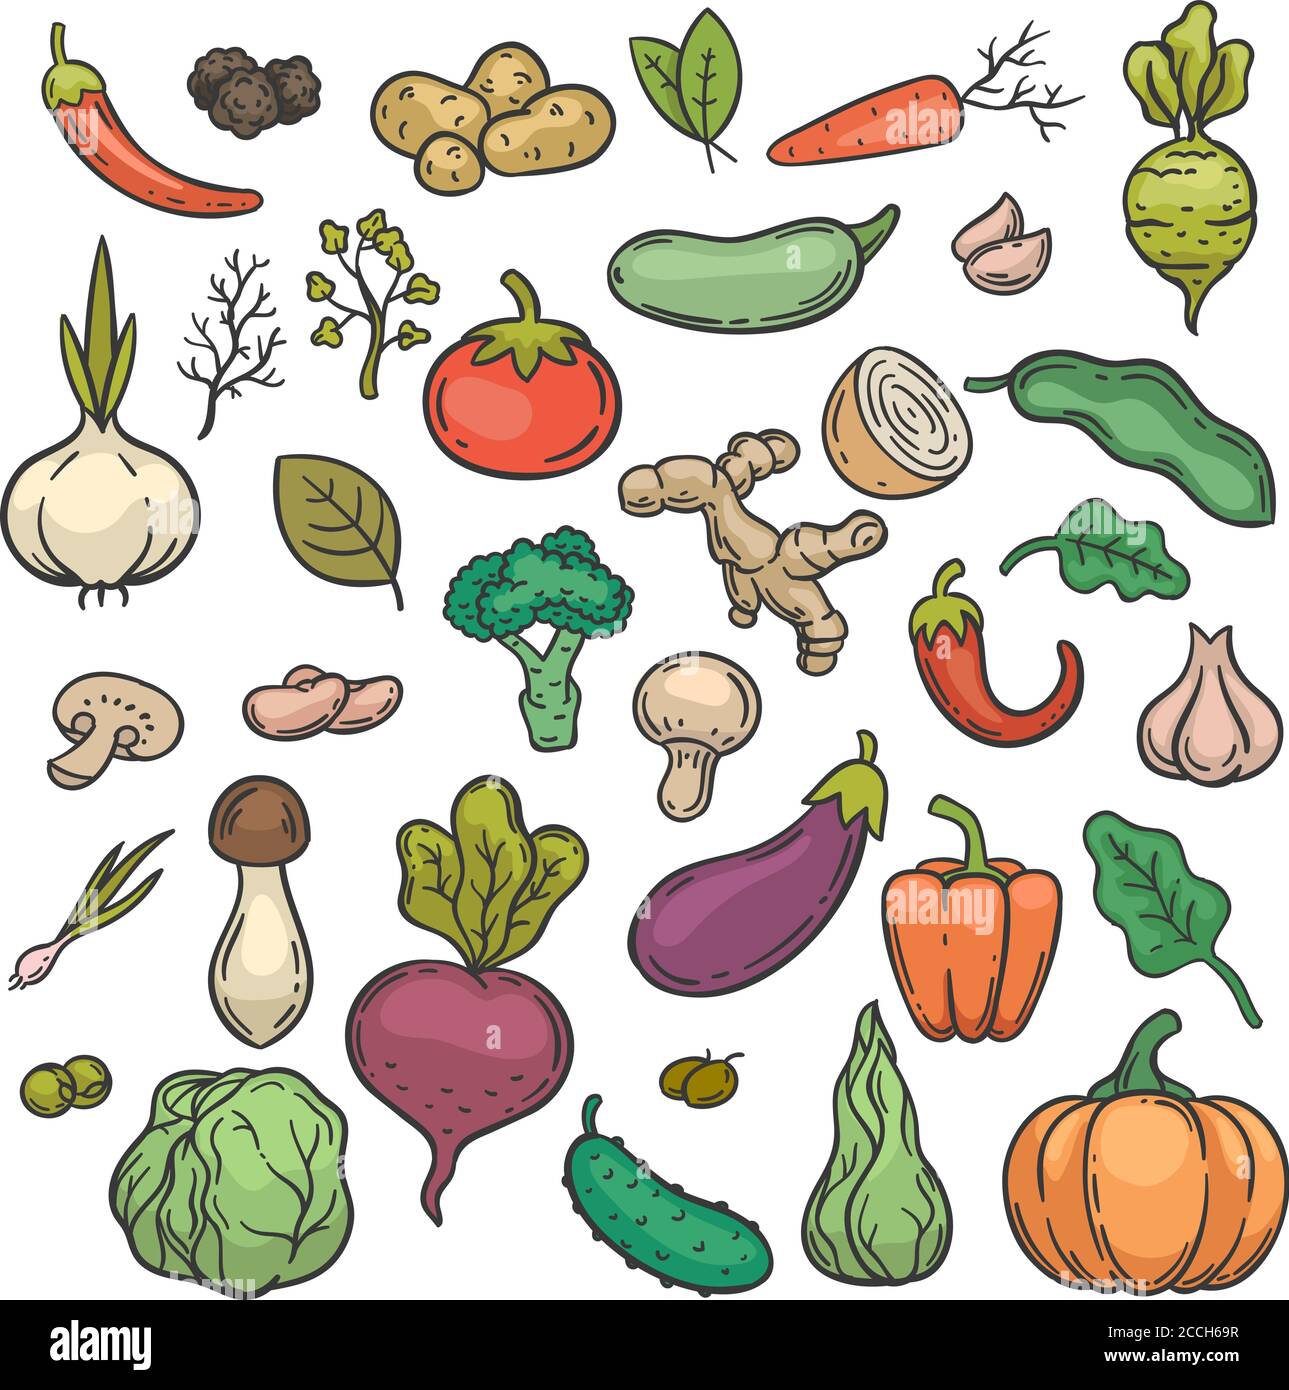 Disegnare gli ortaggi. Colore disegnato a mano prodotto vegetariano vegetale dieta sana cetriolo, broccoli e cavolo, carota, patate doodle insieme vettore Illustrazione Vettoriale